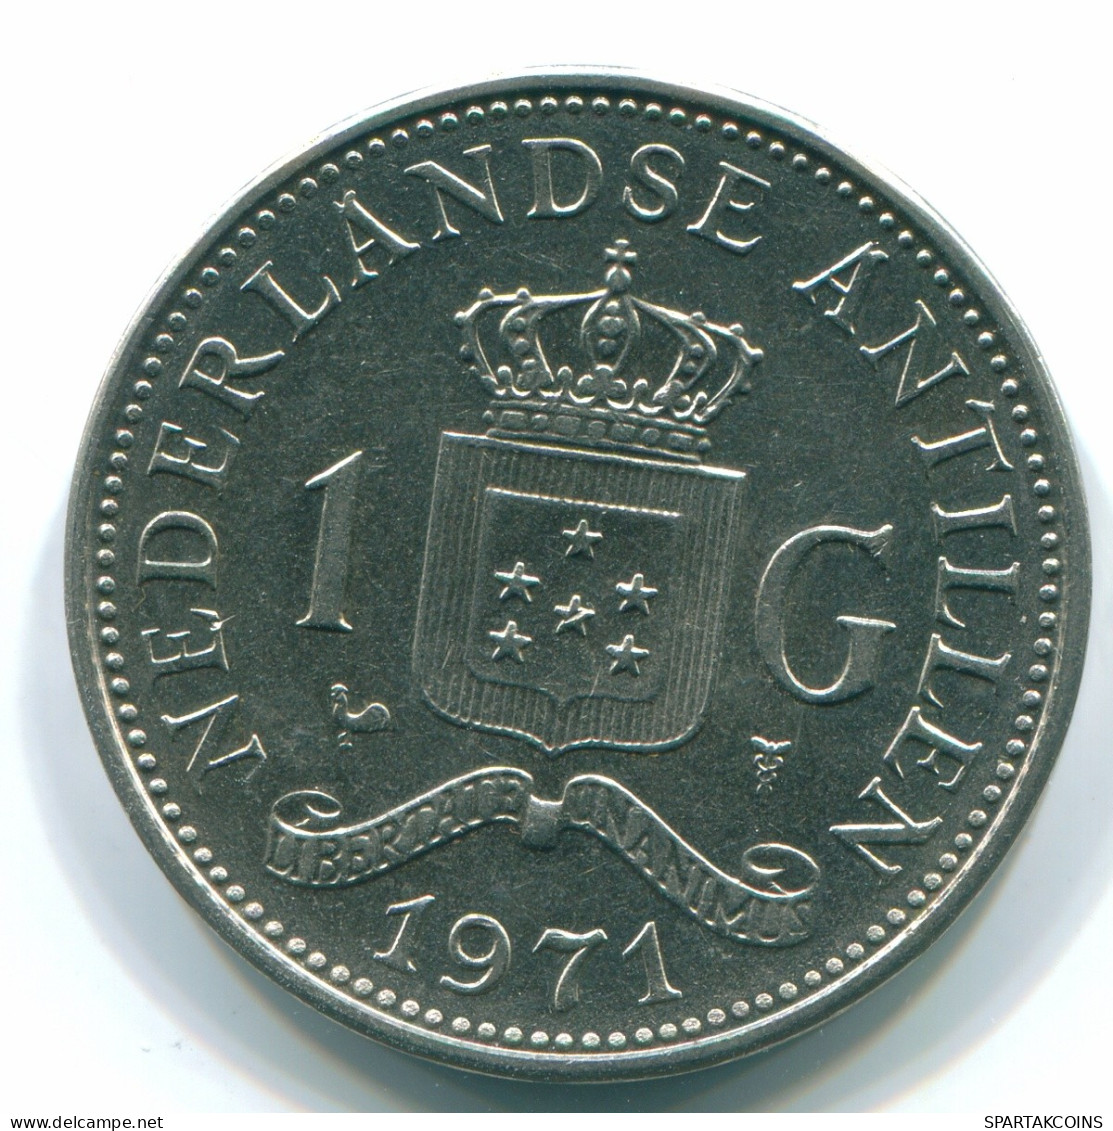 1 GULDEN 1971 NIEDERLÄNDISCHE ANTILLEN Nickel Koloniale Münze #S11993.D.A - Antille Olandesi